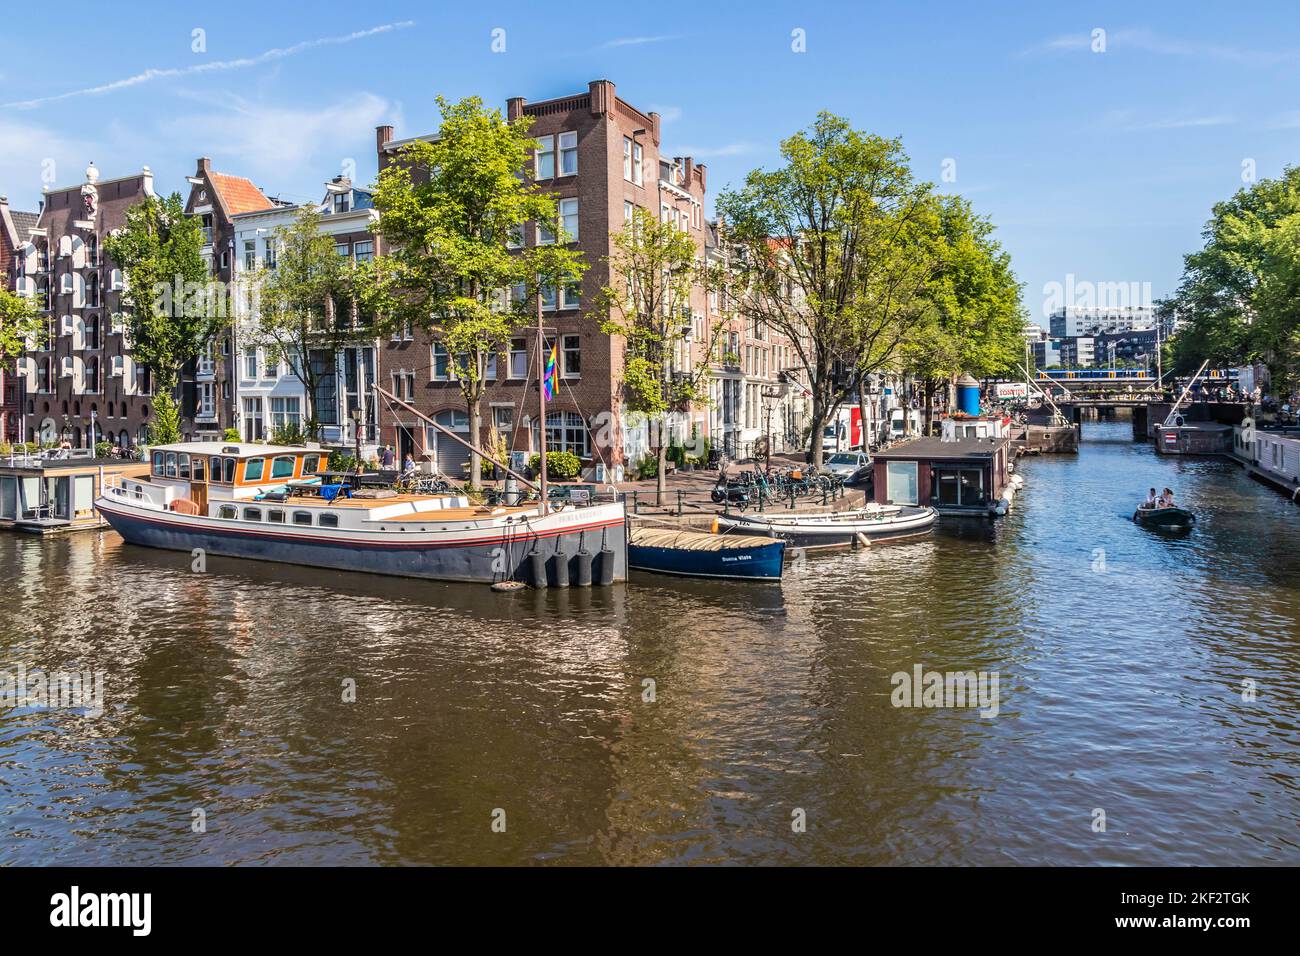 Jonction de Brouwersgracht et Prinsengracht, Amsterdam, pays-Bas Banque D'Images